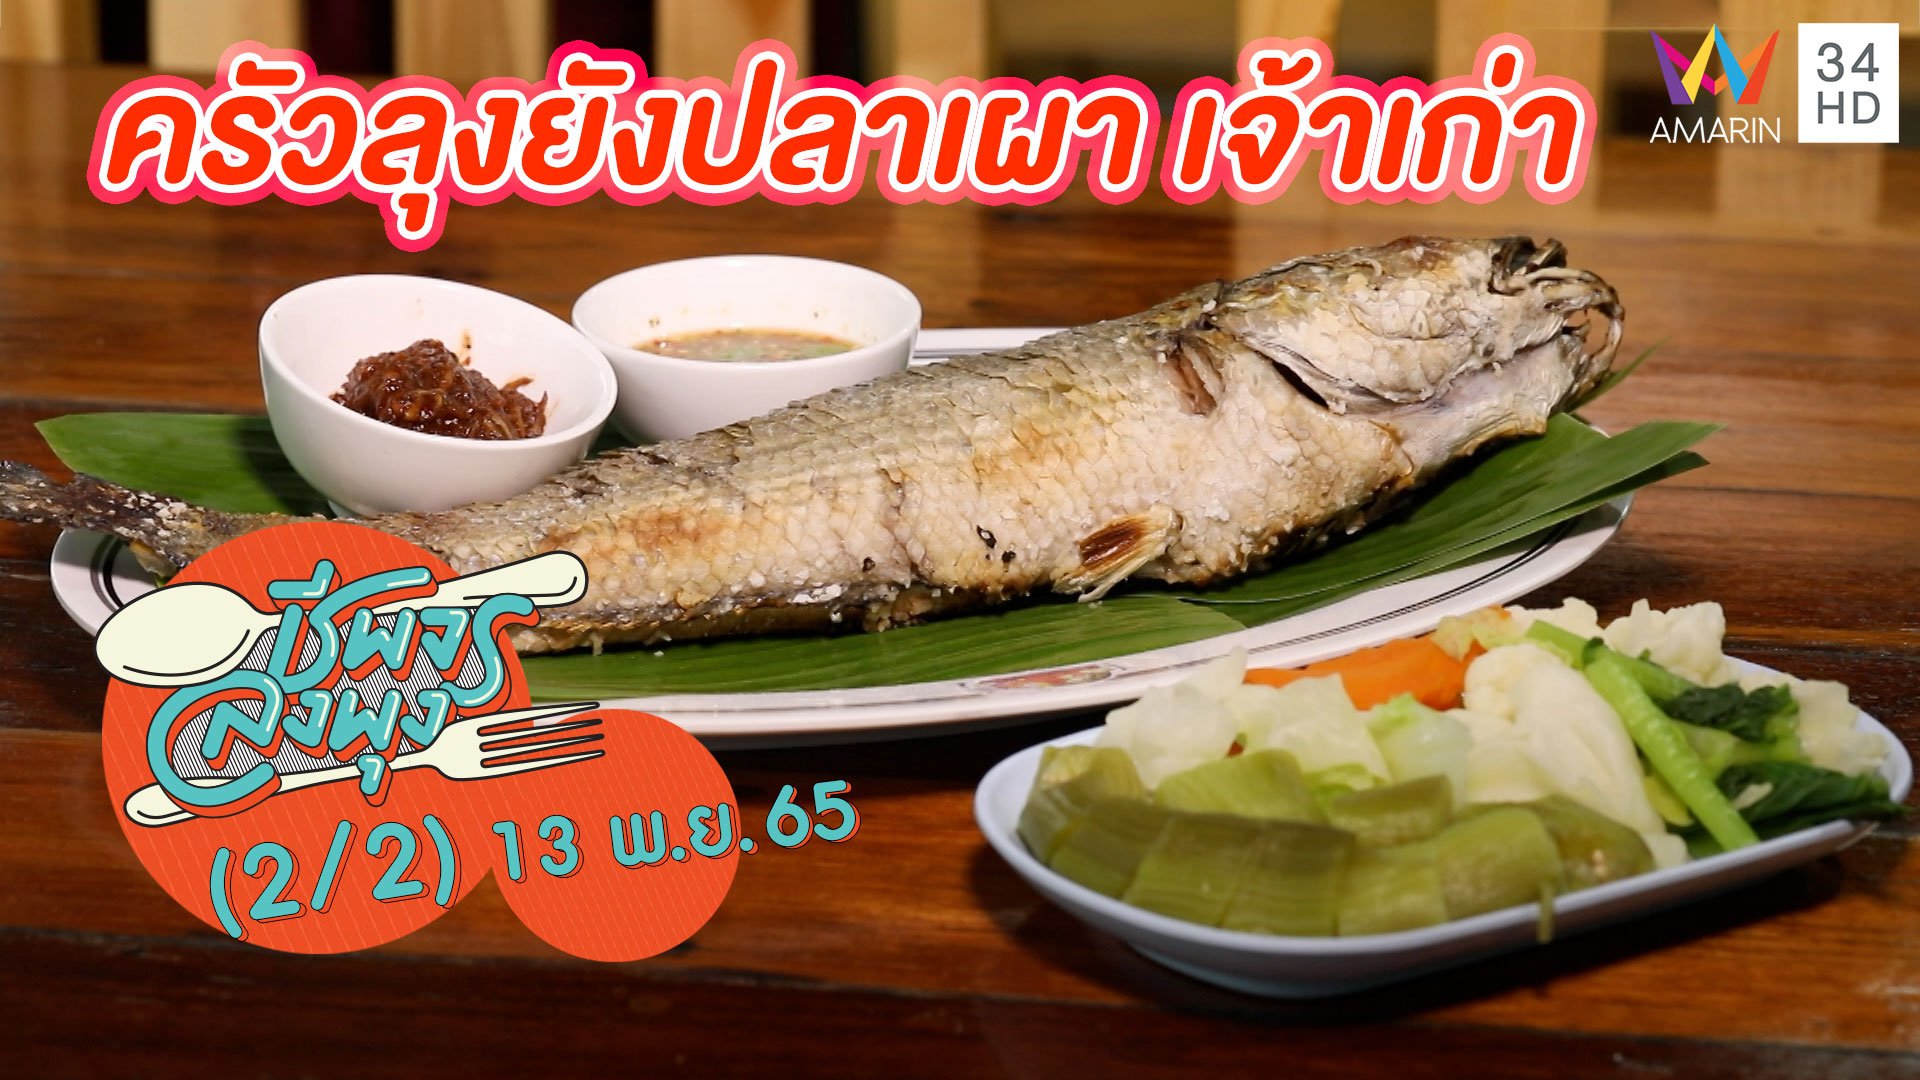 ปลาช่อนเผาเกลือ หอมกลิ่นฟาง @ ร้านครัวลุงยังปลาเผา เจ้าเก่า | ชีพจรลงพุง | 13 พ.ย. 65 (2/2) | AMARIN TVHD34